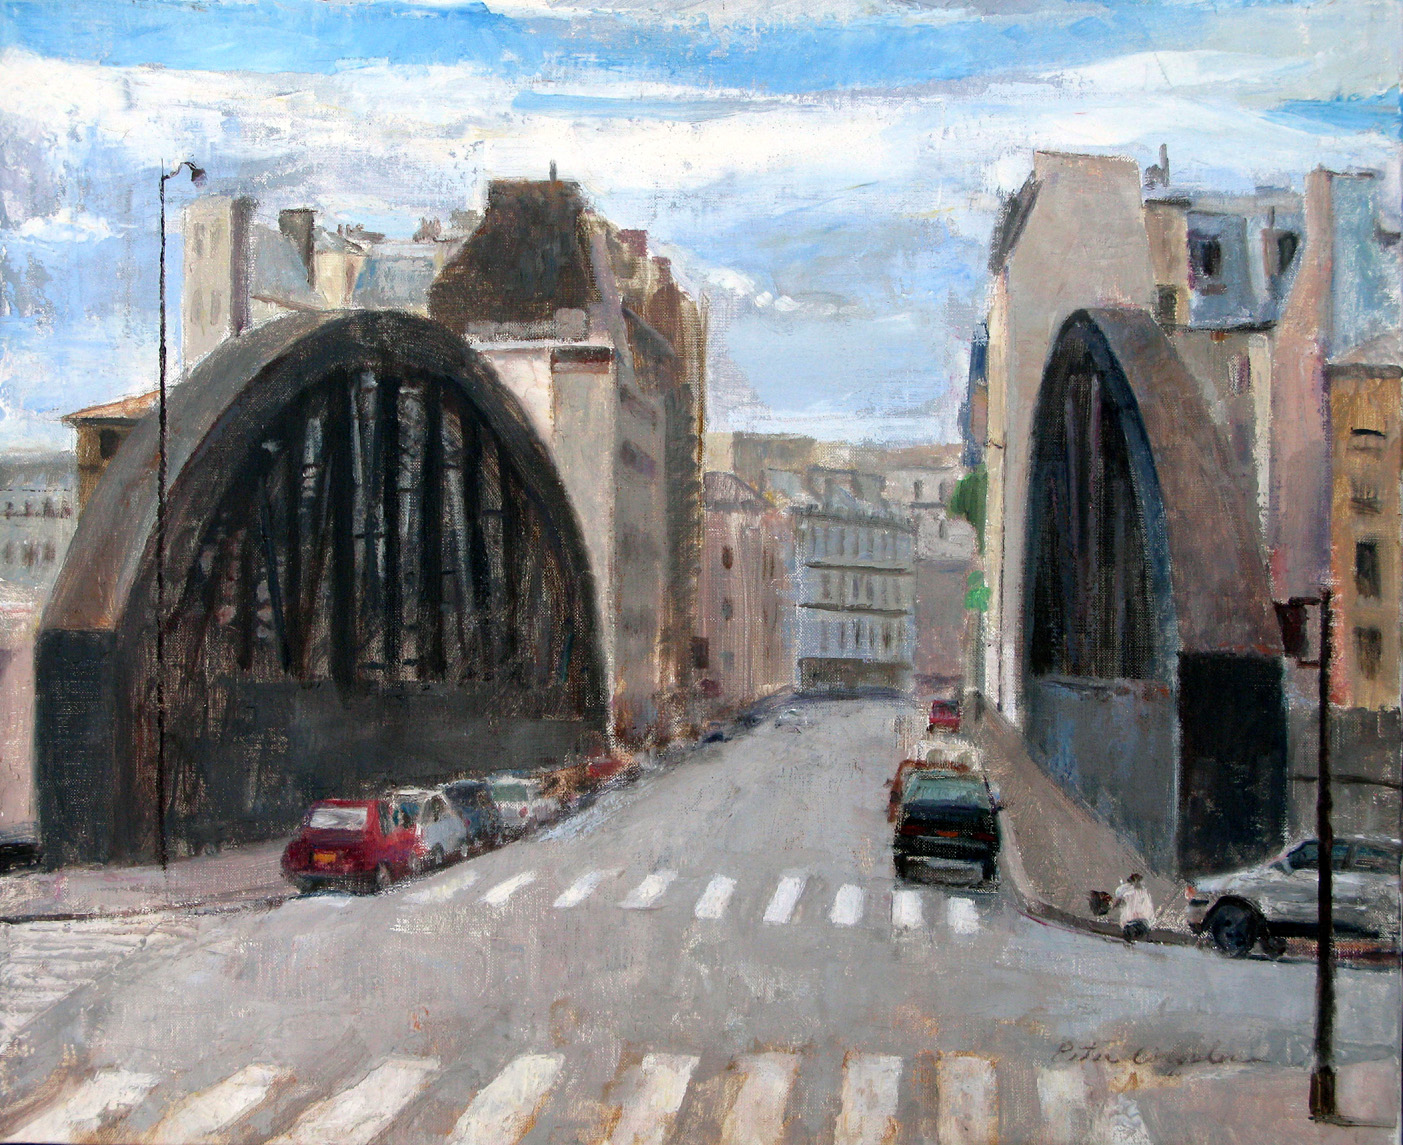 Rue Aqueduc, 19" x 24", oil on linen, 1998.